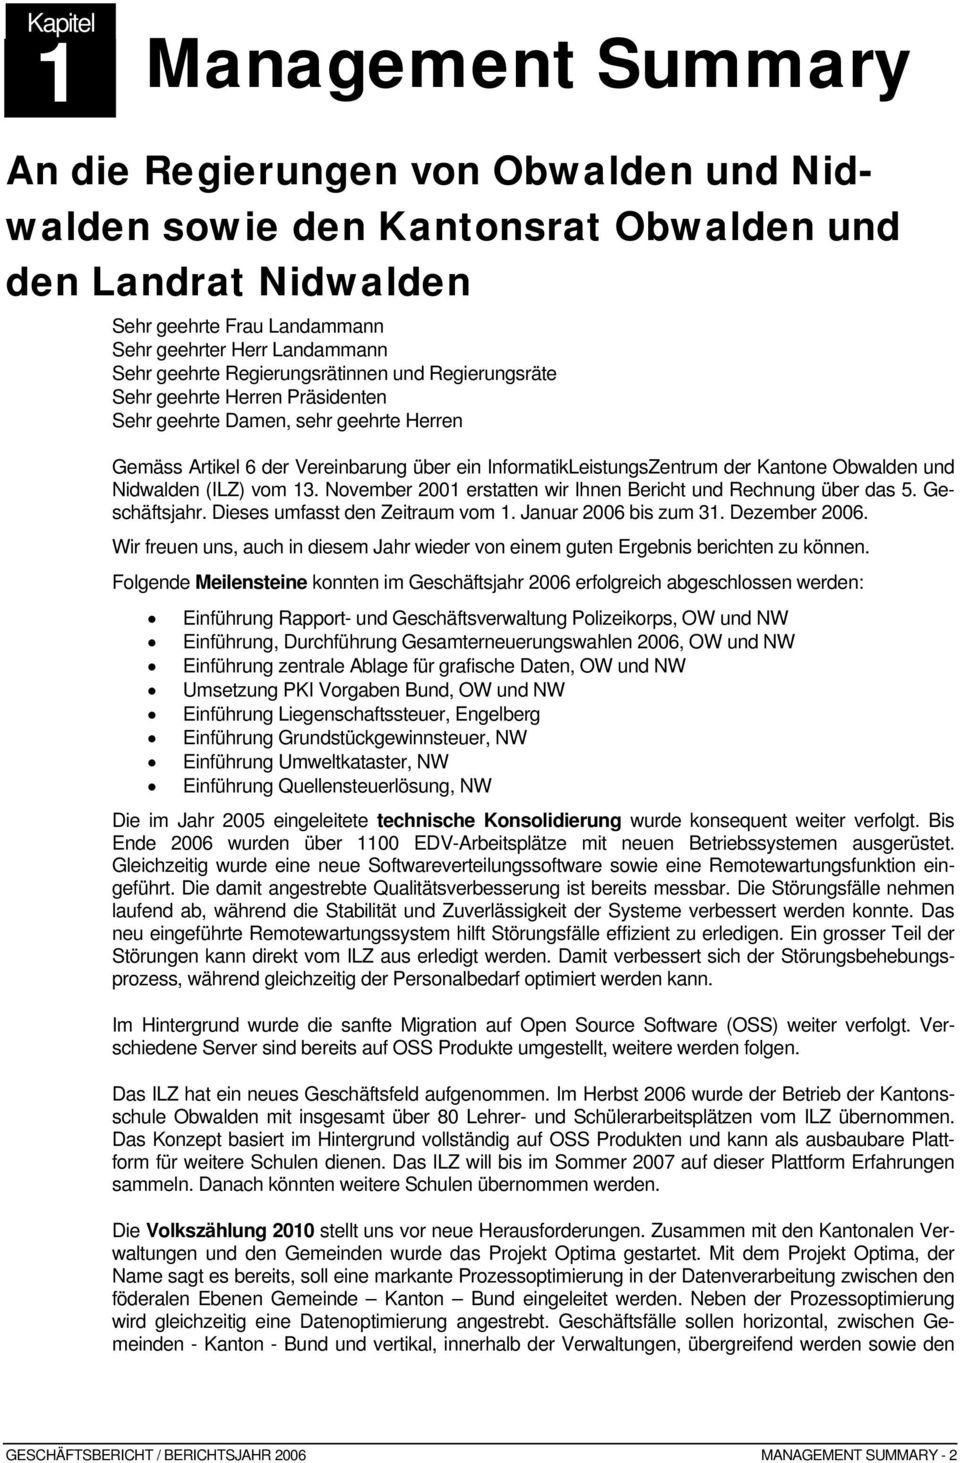 Obwalden und Nidwalden (ILZ) vom 13. November 2001 erstatten wir Ihnen Bericht und Rechnung über das 5. Geschäftsjahr. Dieses umfasst den Zeitraum vom 1. Januar 2006 bis zum 31. Dezember 2006.